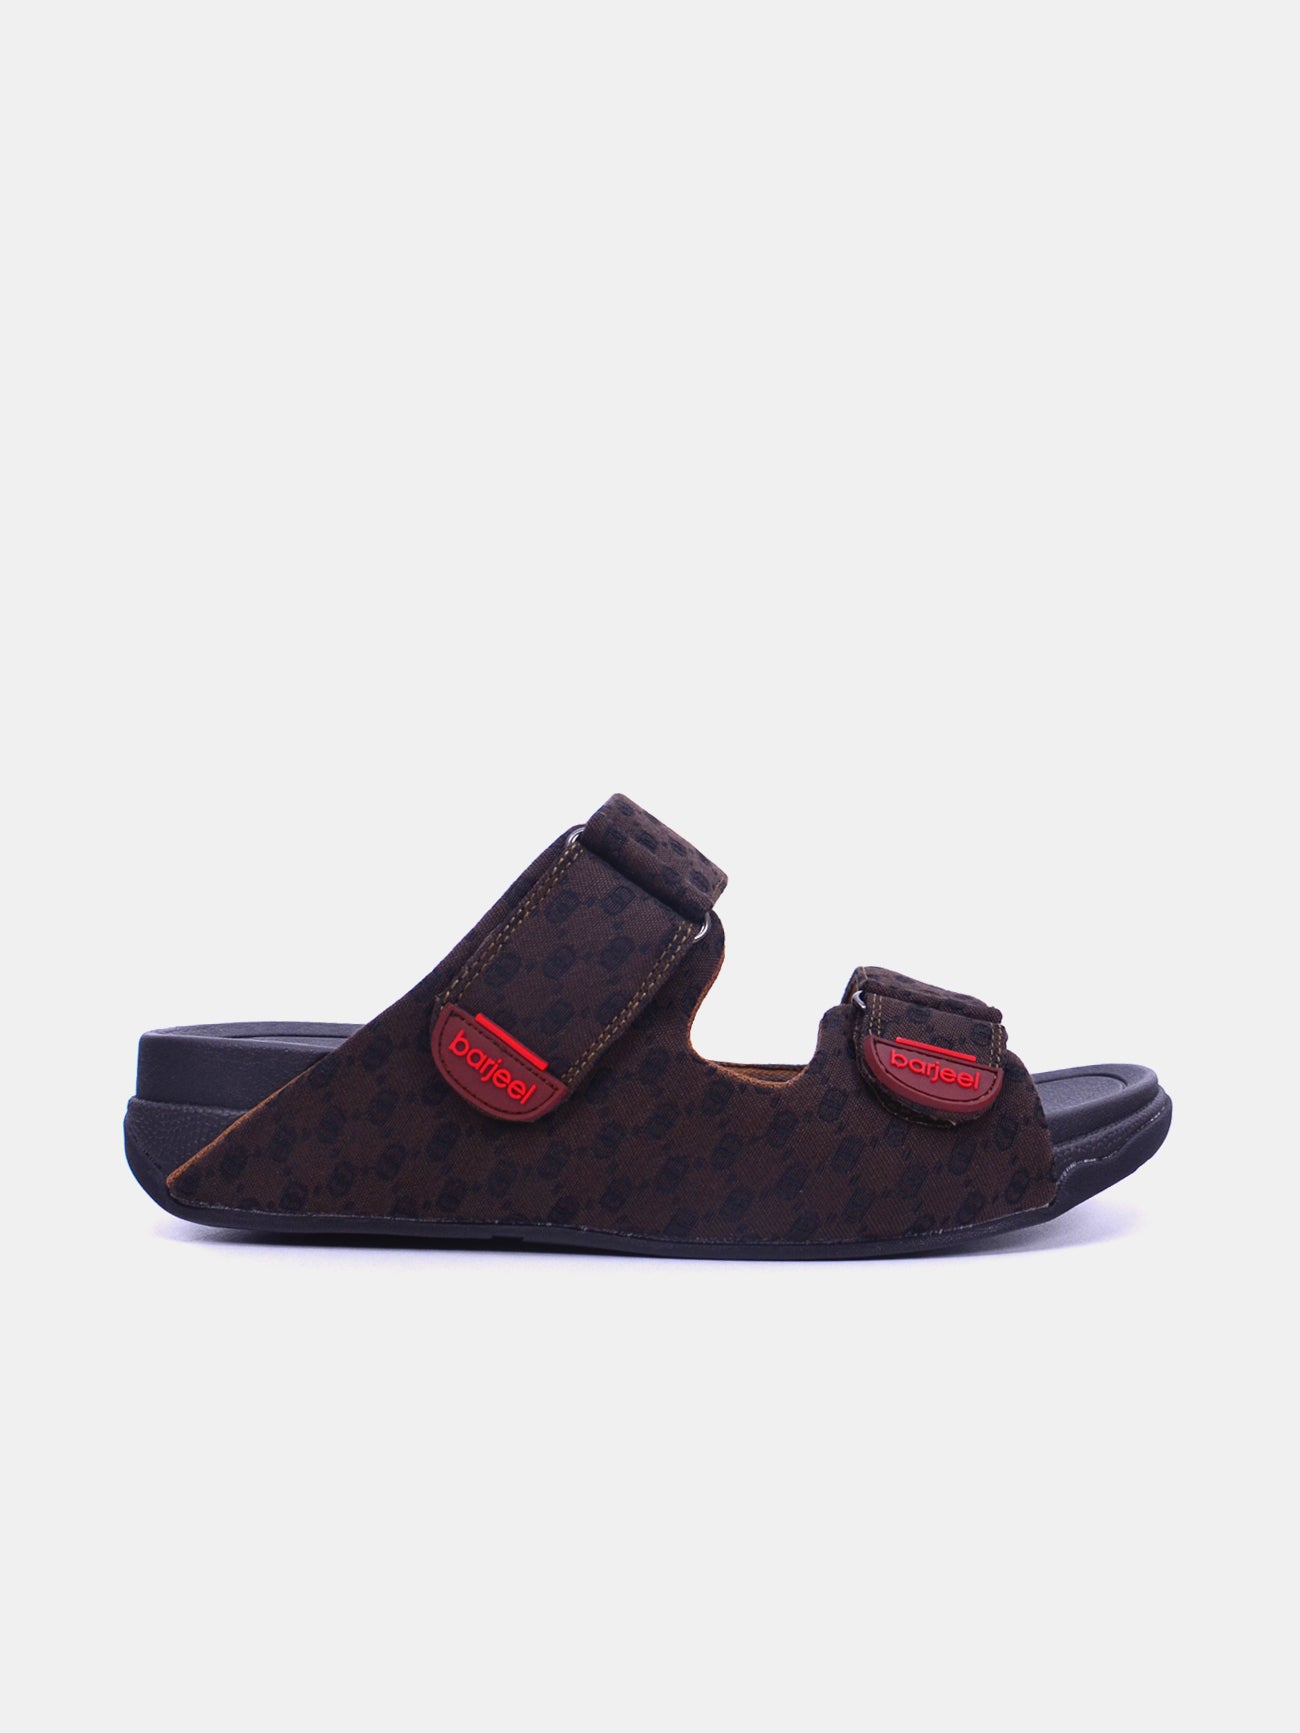 Barjeel Uno 20272-2 Men's Arabic Sandals #color_Brown